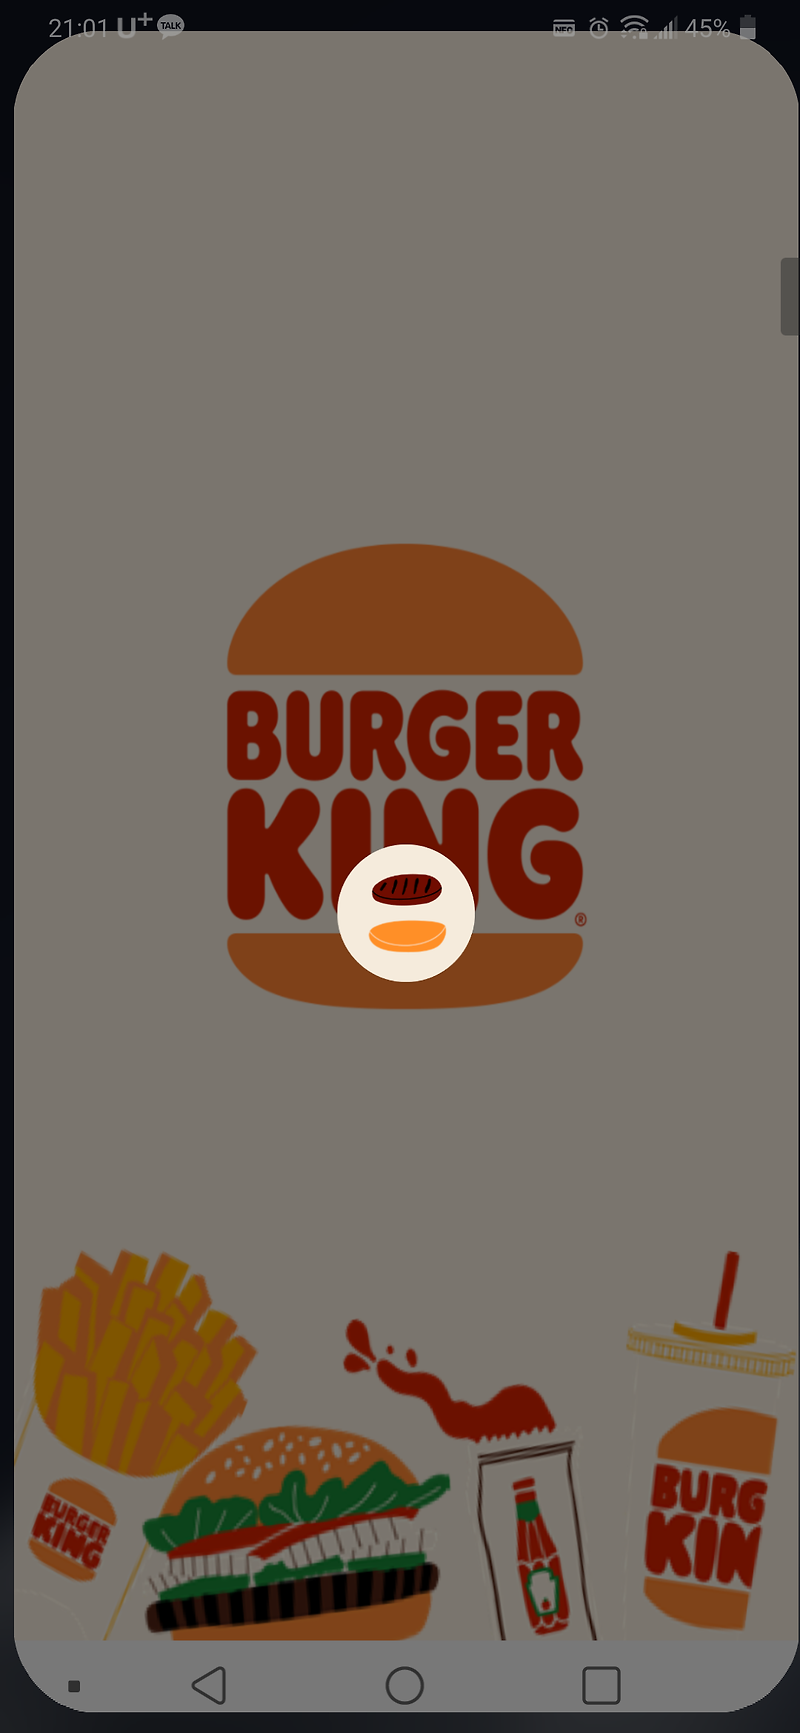 버거킹 딜리버리 메뉴와 BUGGER KING 앱으로 주문하기 경험담